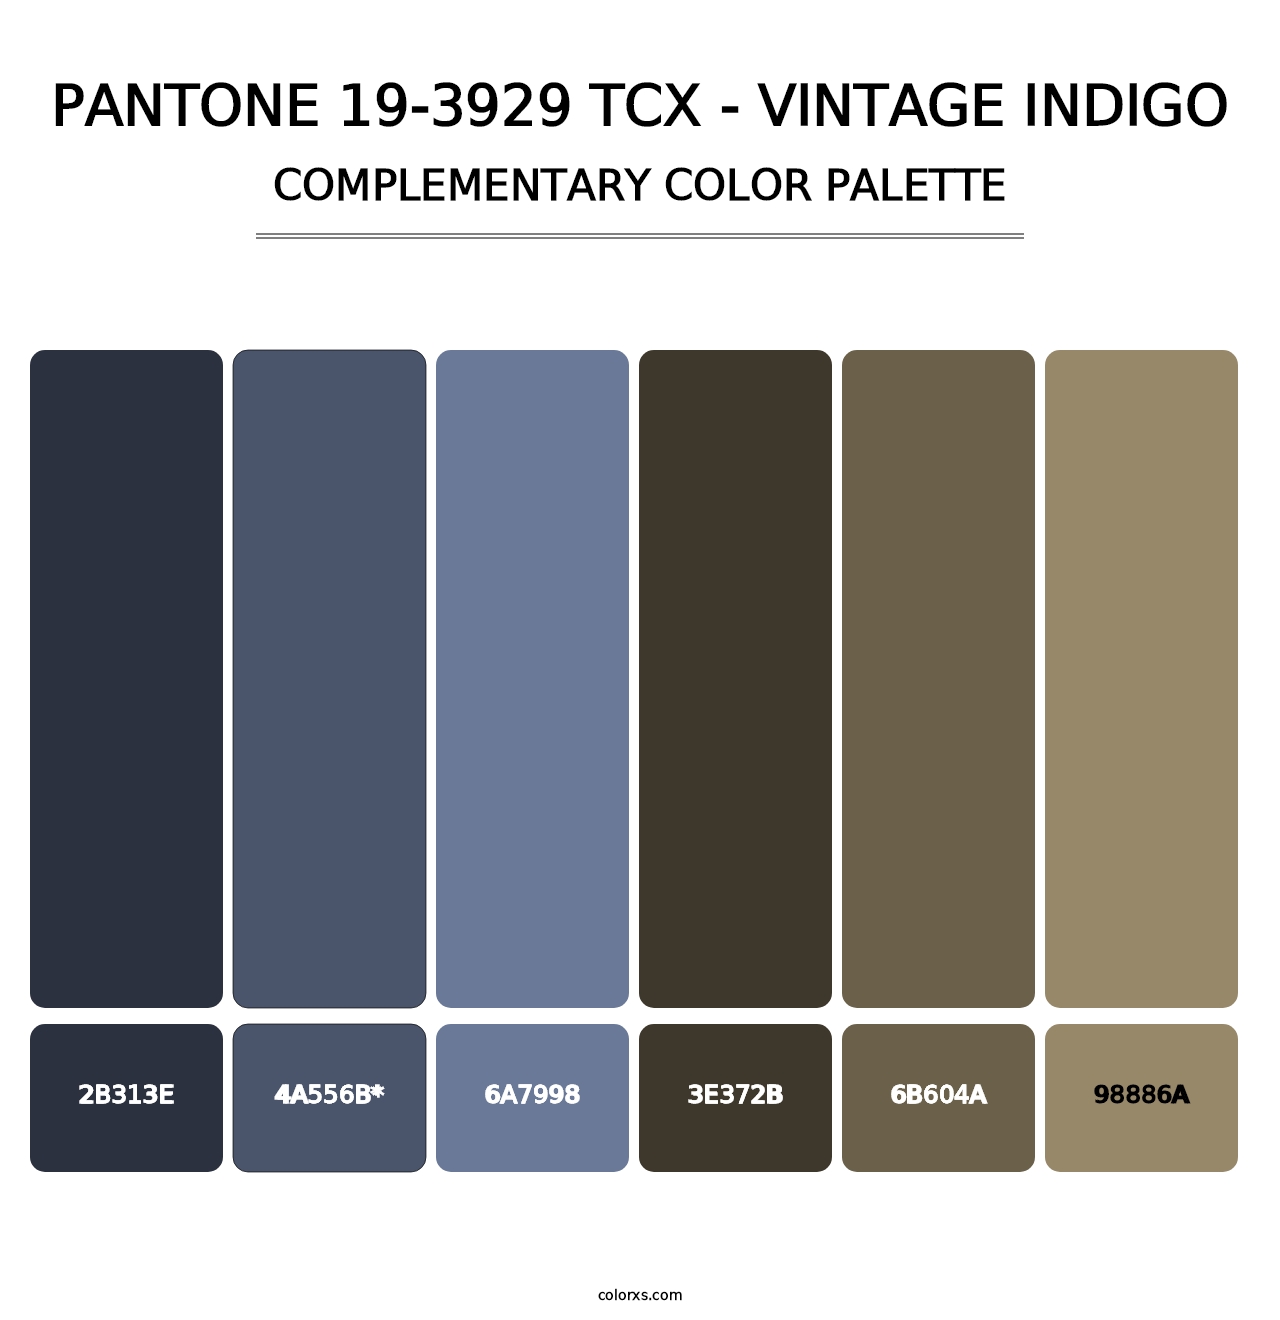 PANTONE 19-3929 TCX - Vintage Indigo - Complementary Color Palette